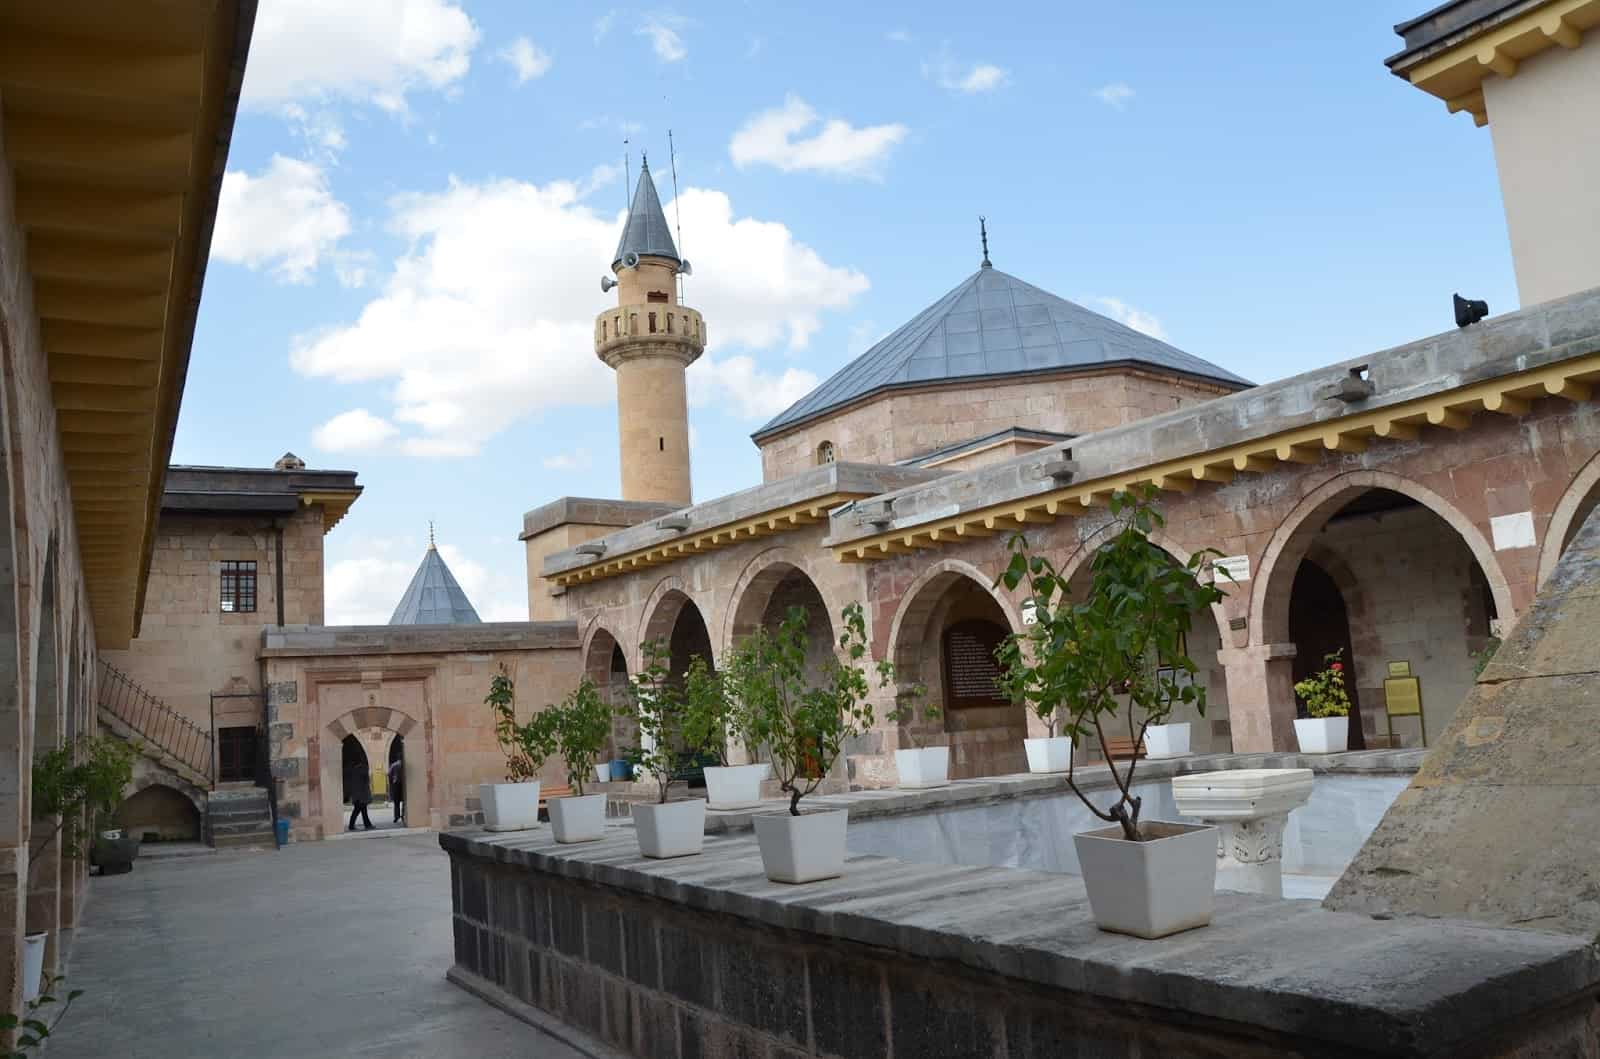 Hacıbektaş Külliyesi in Hacıbektaş, Turkey